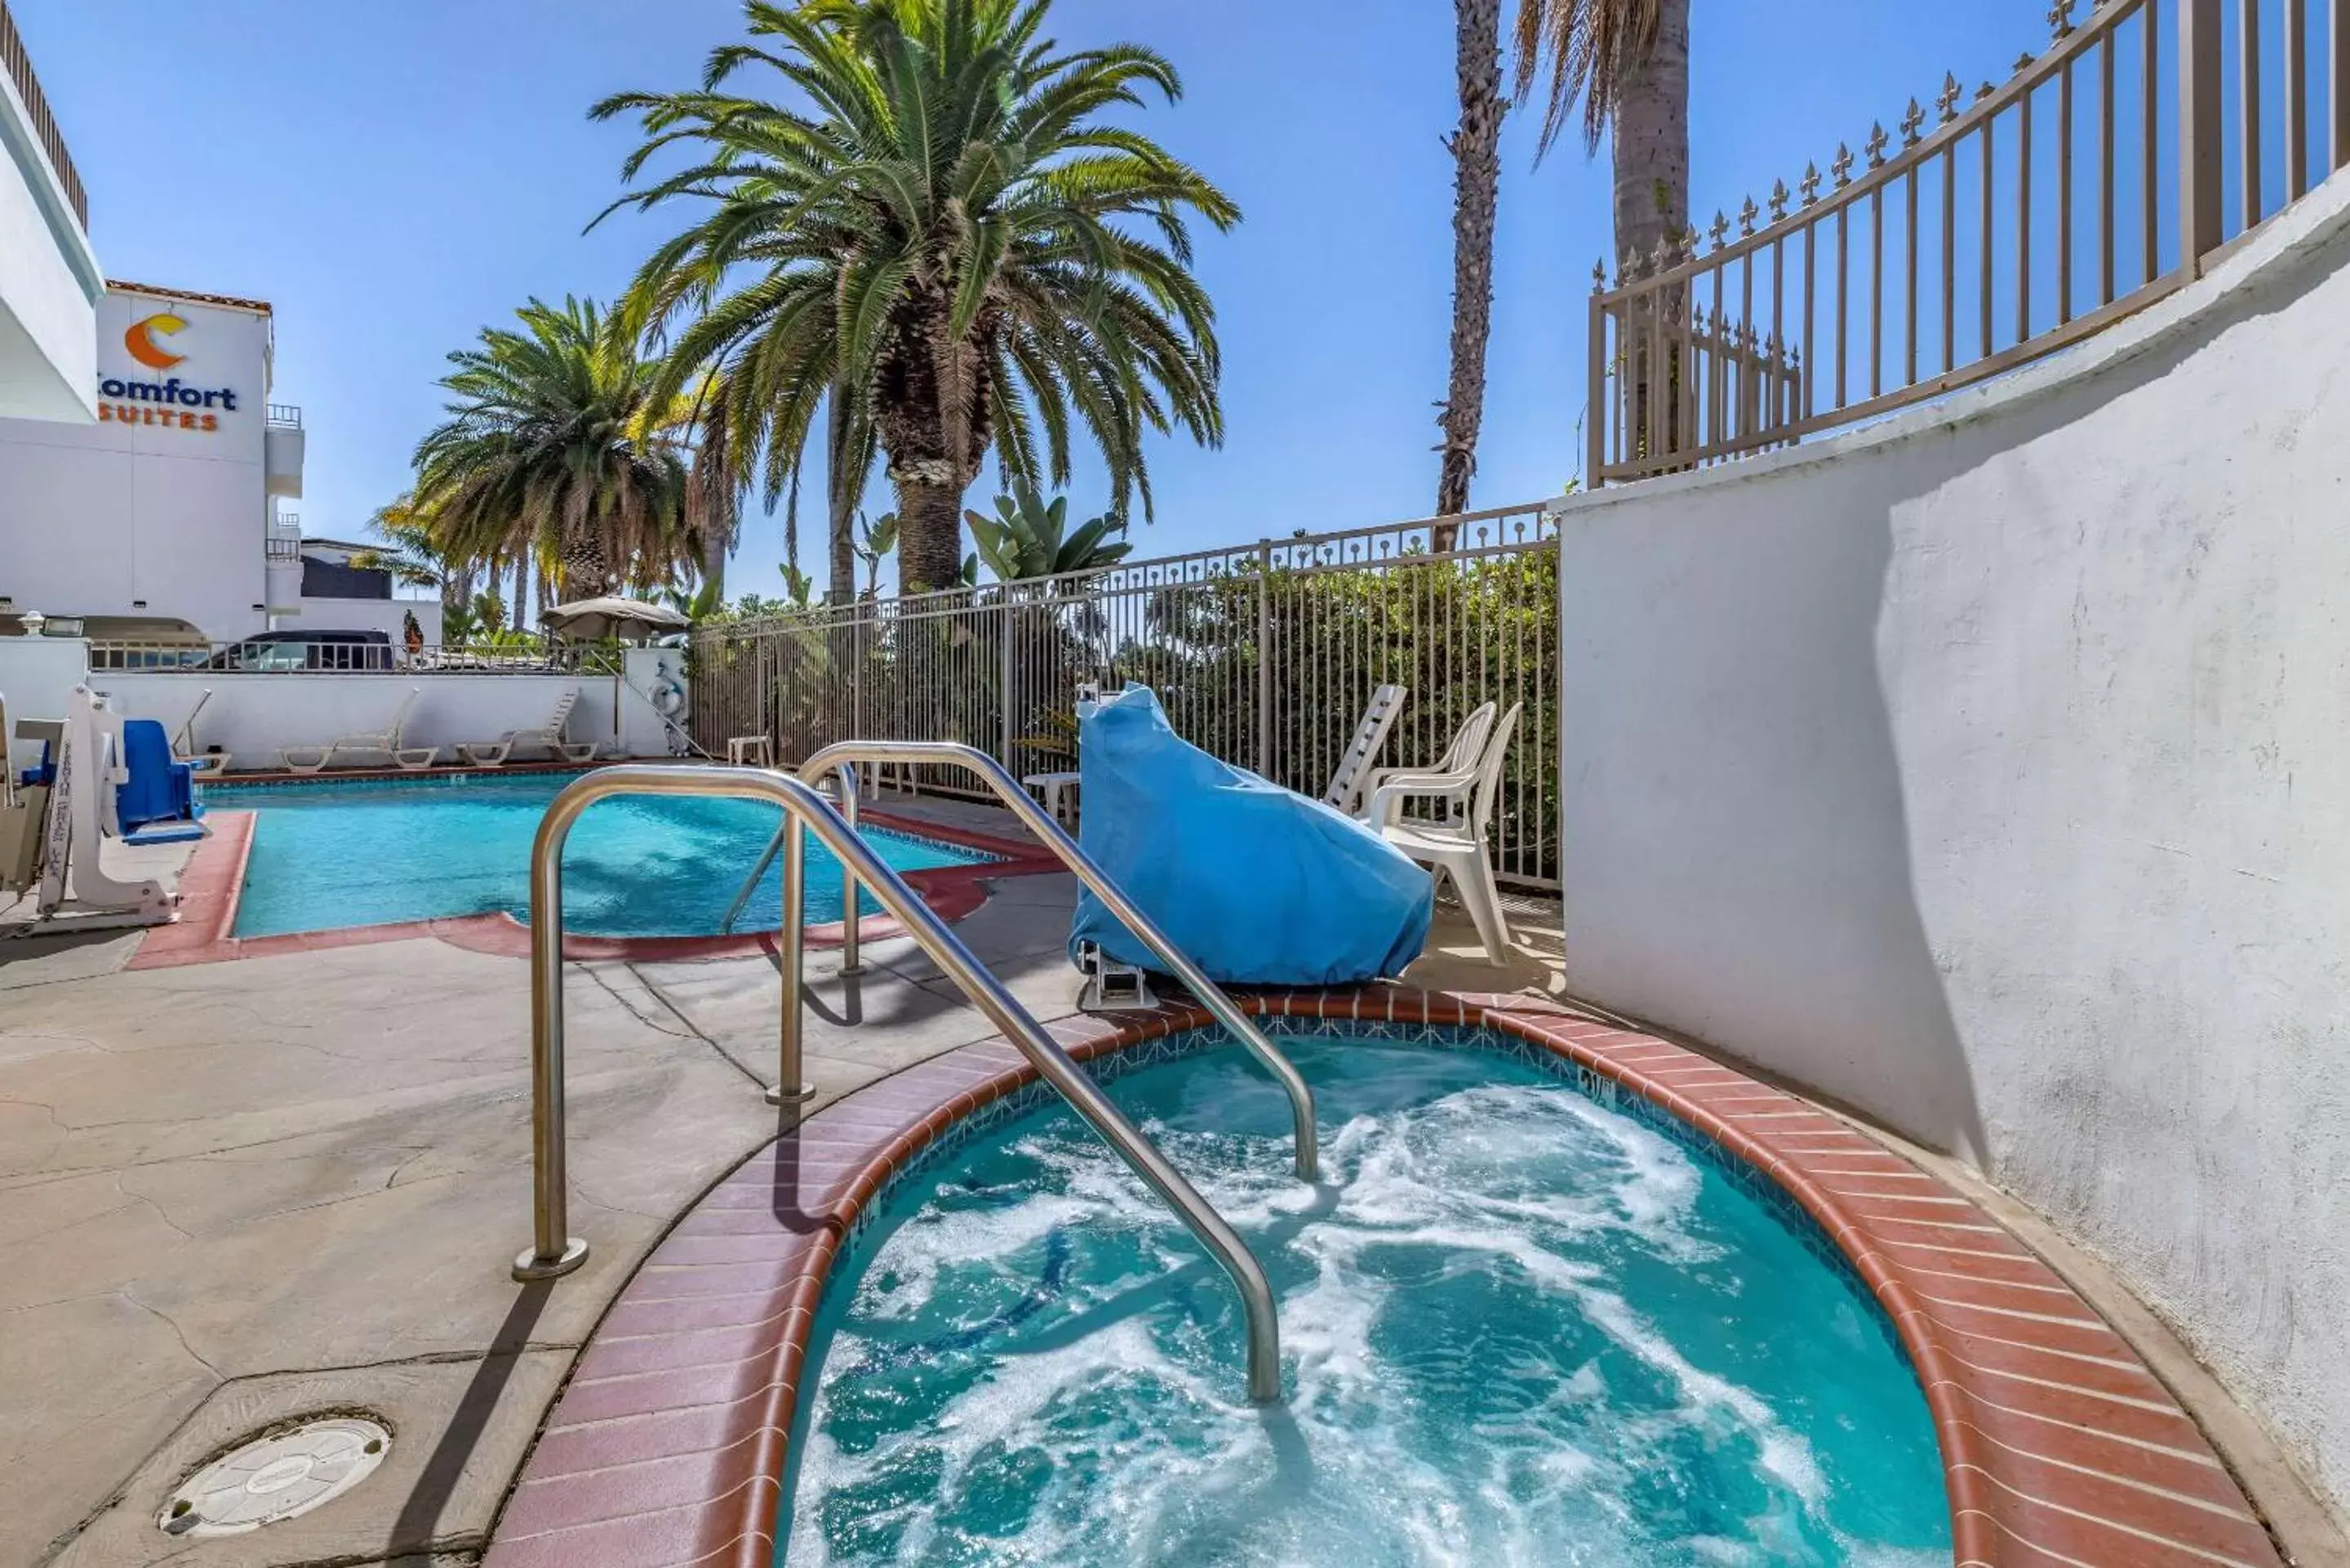 Activities, Swimming Pool in Comfort Suites San Clemente Beach